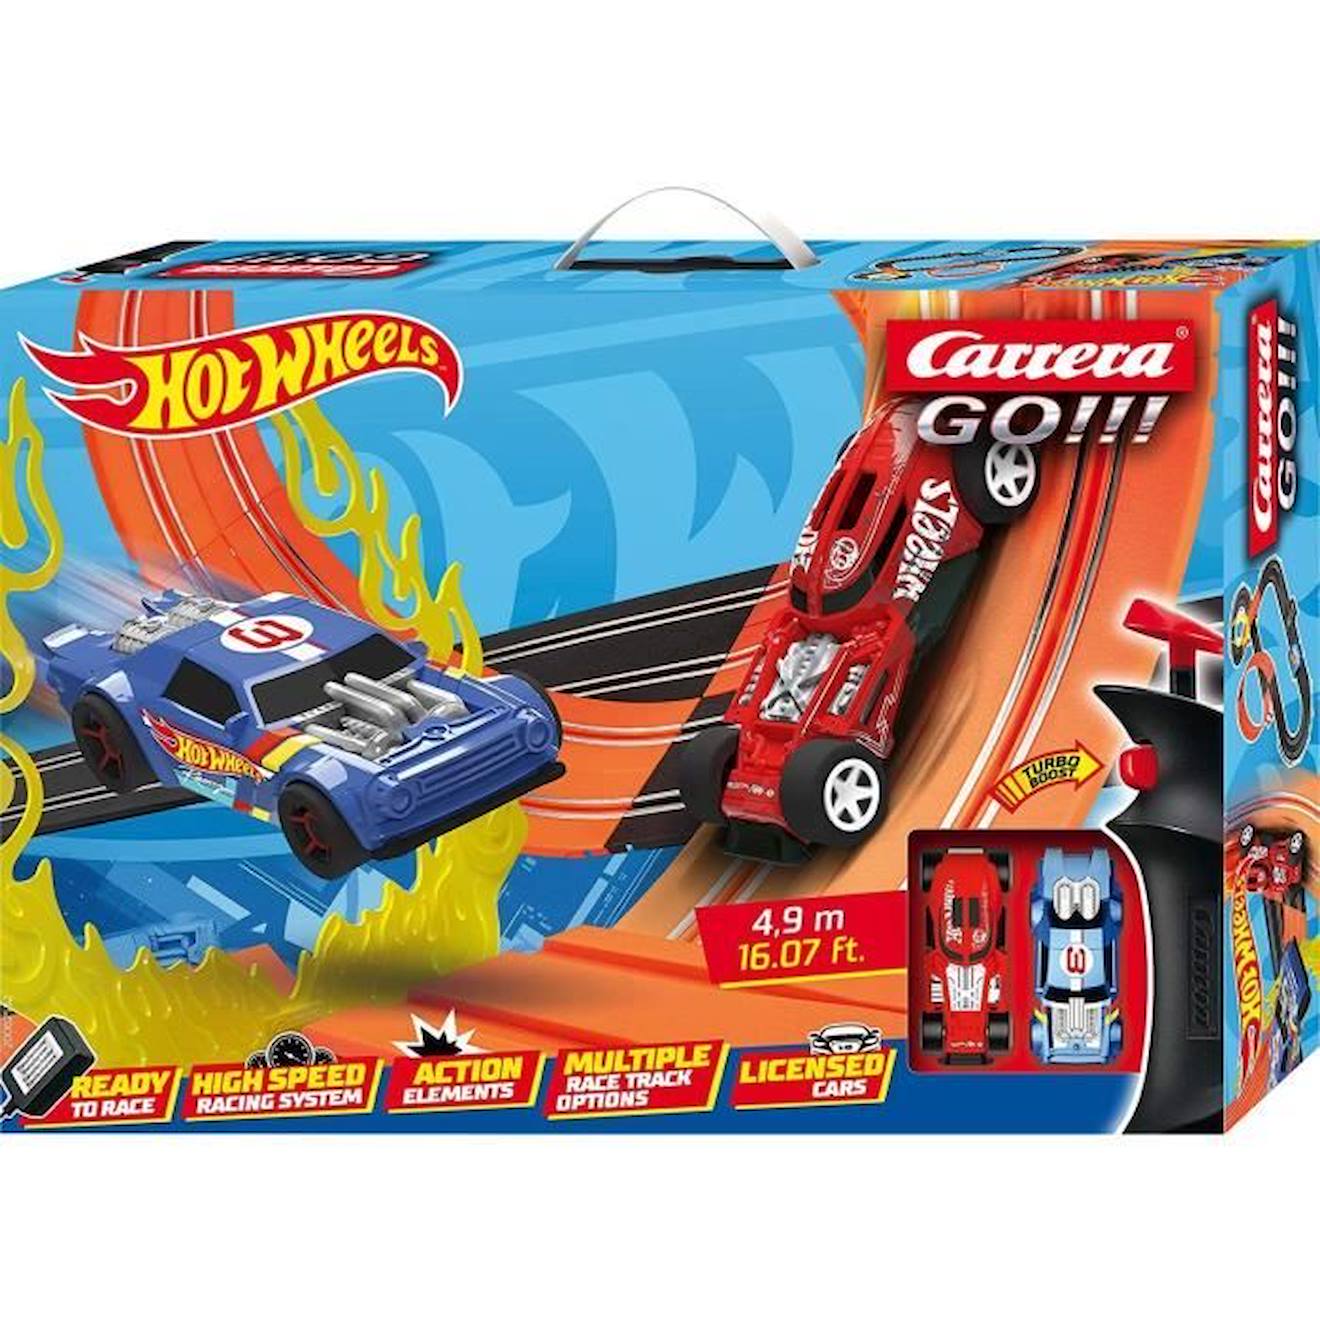 Circuit électrique Hot Wheels 4,9m - Carrera GO!!! - 2 voitures - Looping  et tremplin orange - Carrera Toys